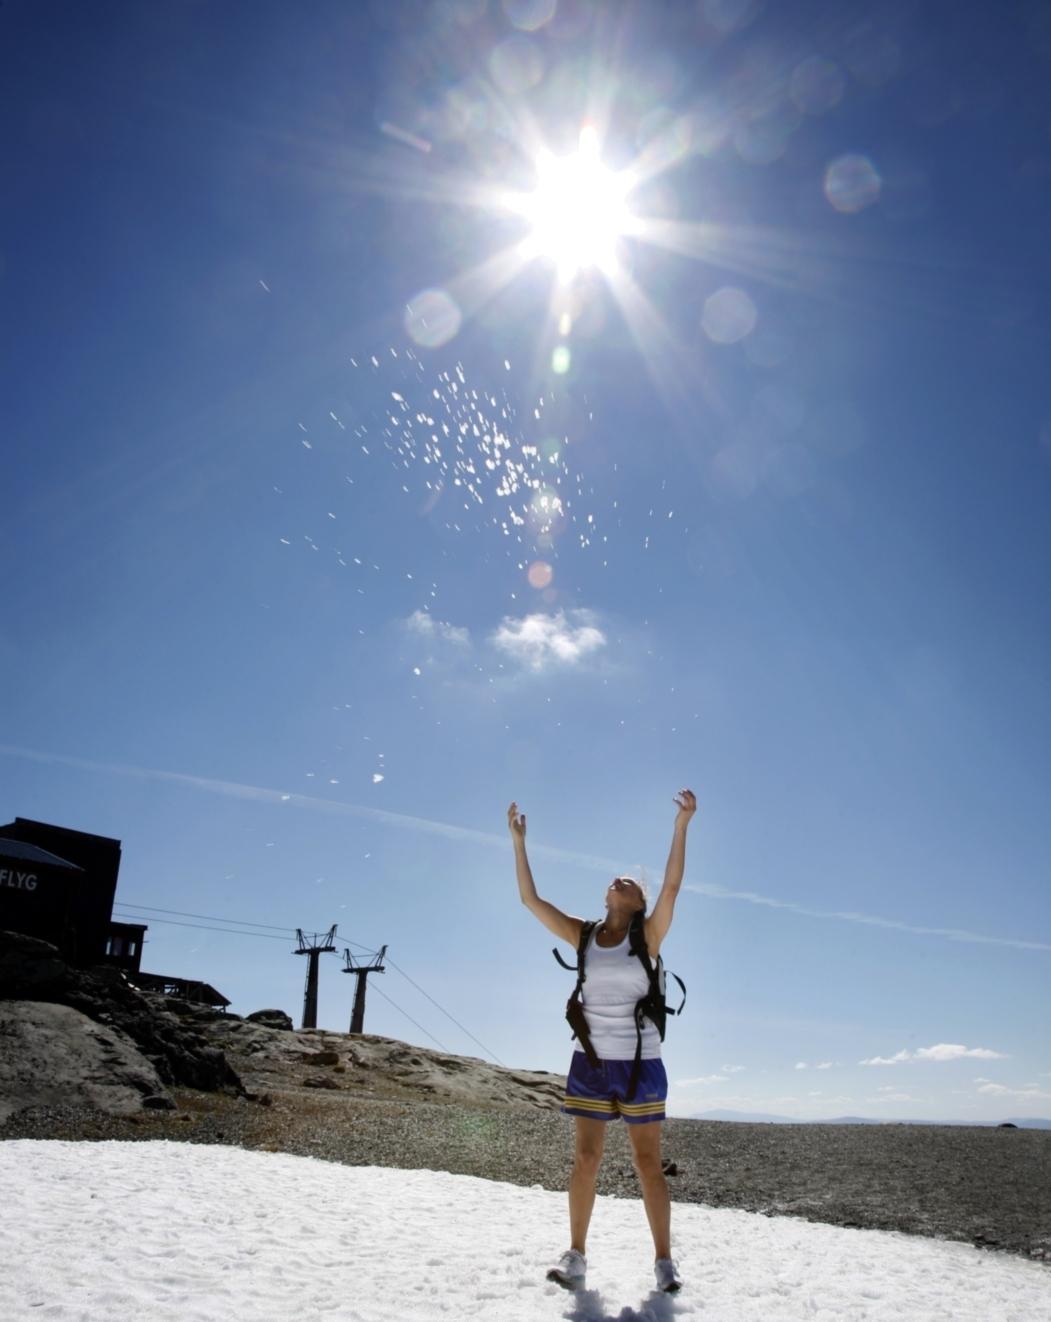 Destinations reporter jublar över att det går att ha snöbollskrig på Åreskutan även på sommaren.